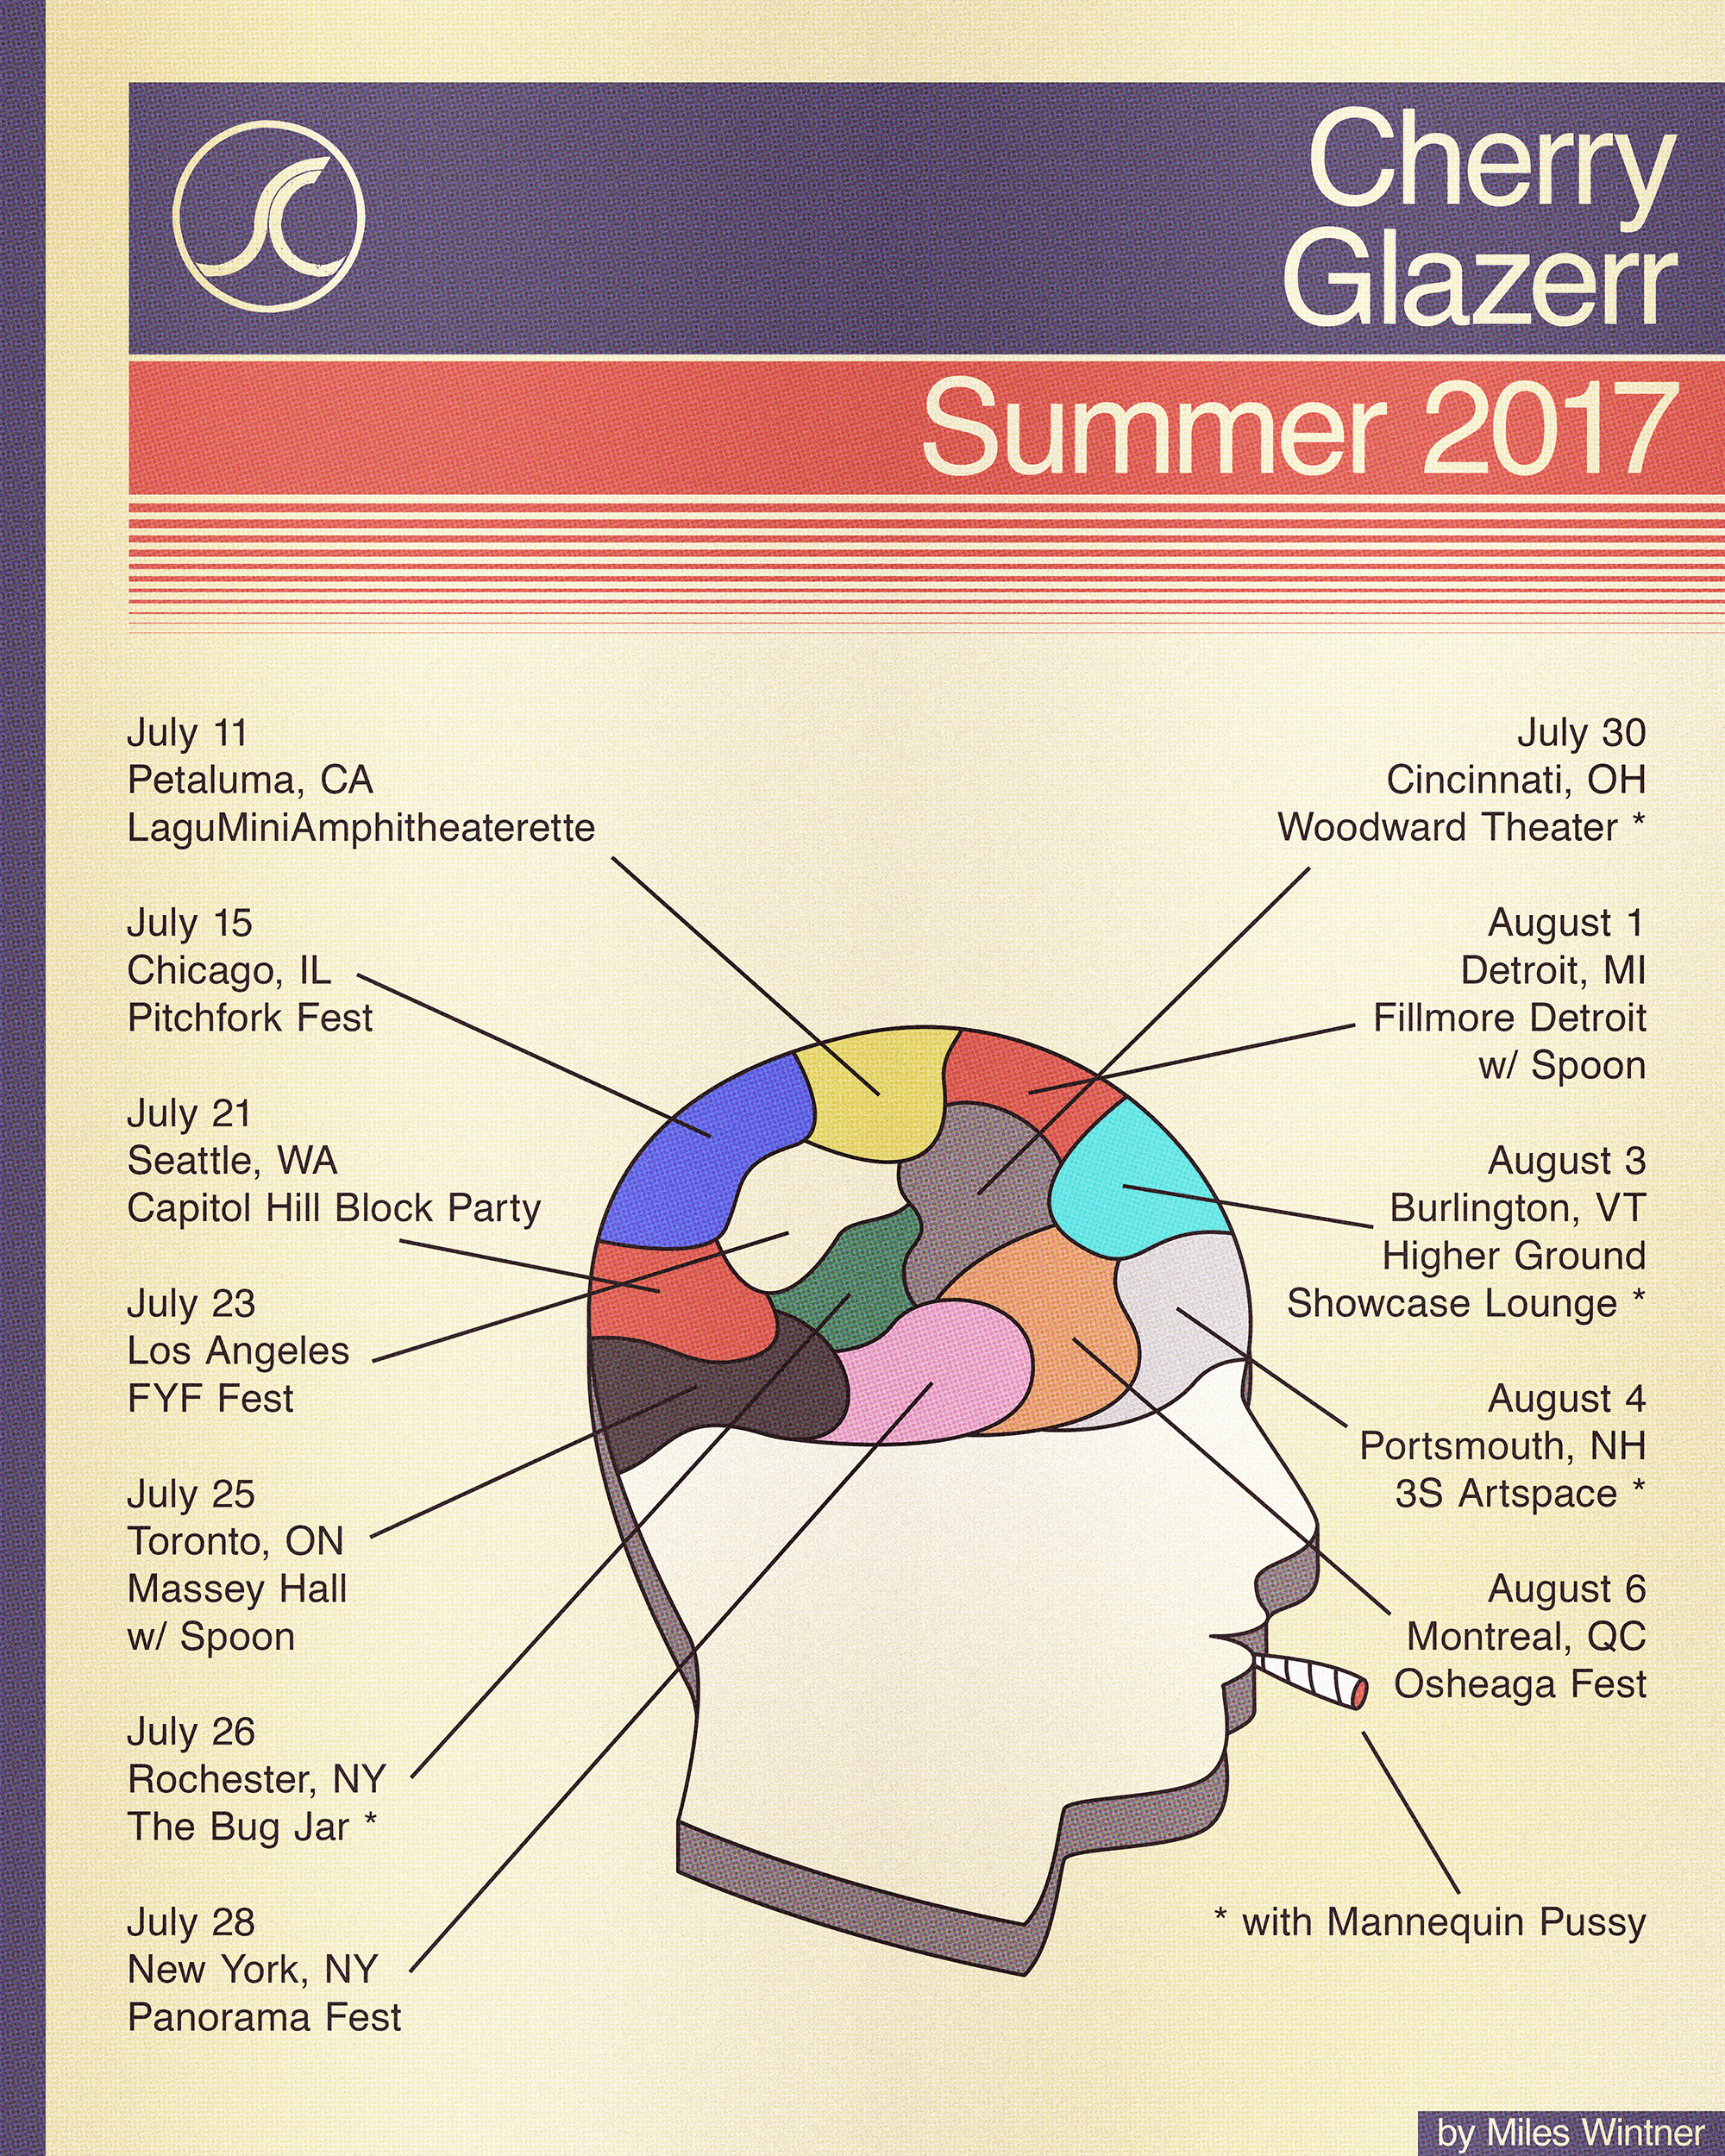 Tour poster for Cherry Glazerr